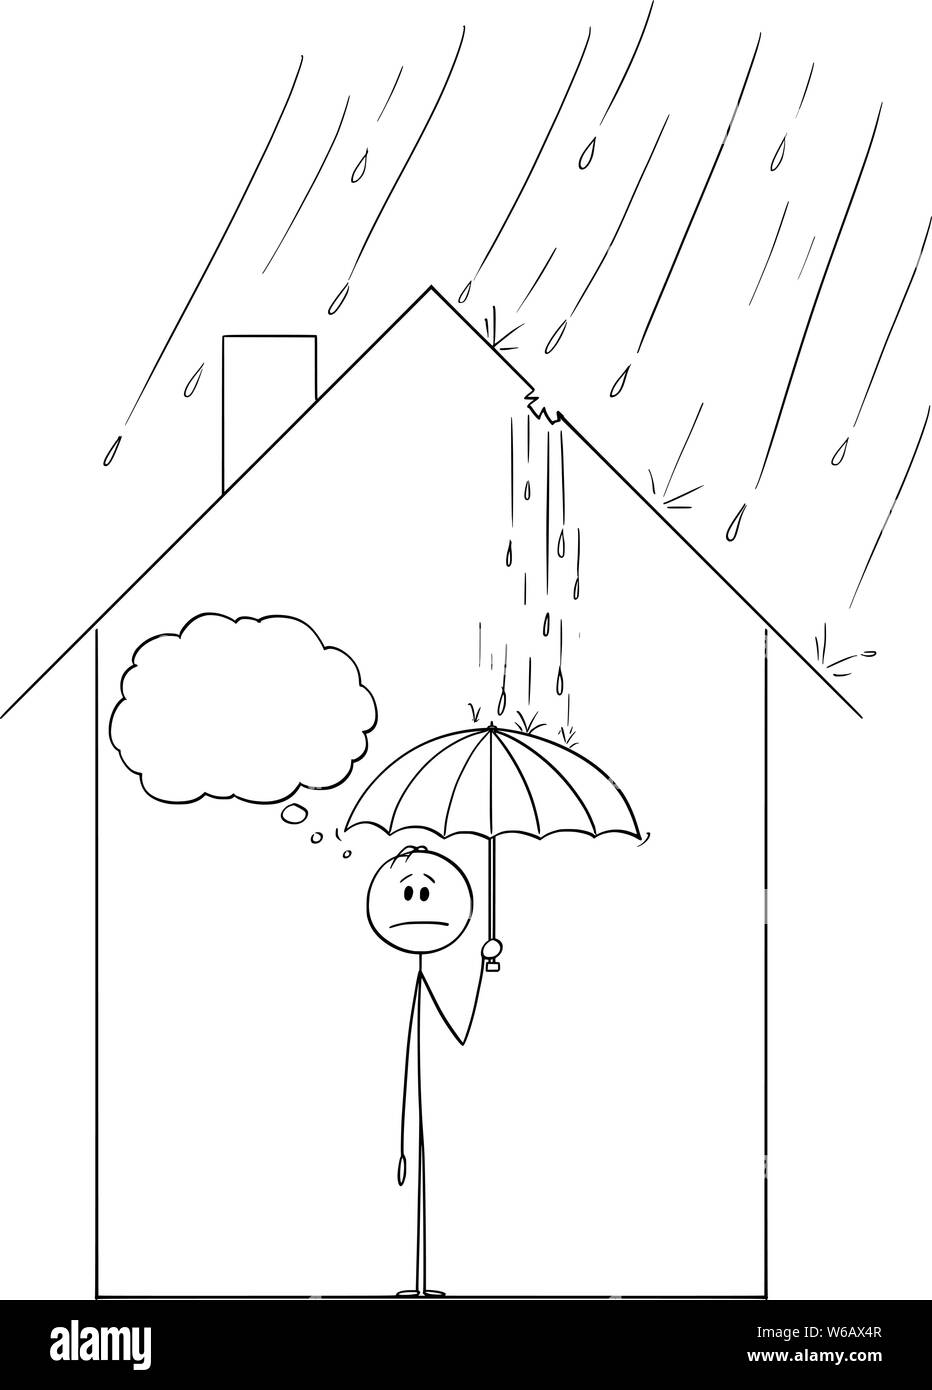 Vector cartoon stick figure dessin illustration conceptuelle de l'homme frustré holding umbrella à l'intérieur de sa maison de famille, parce que la pluie s'en vient à travers le trou dans le toit. Illustration de Vecteur